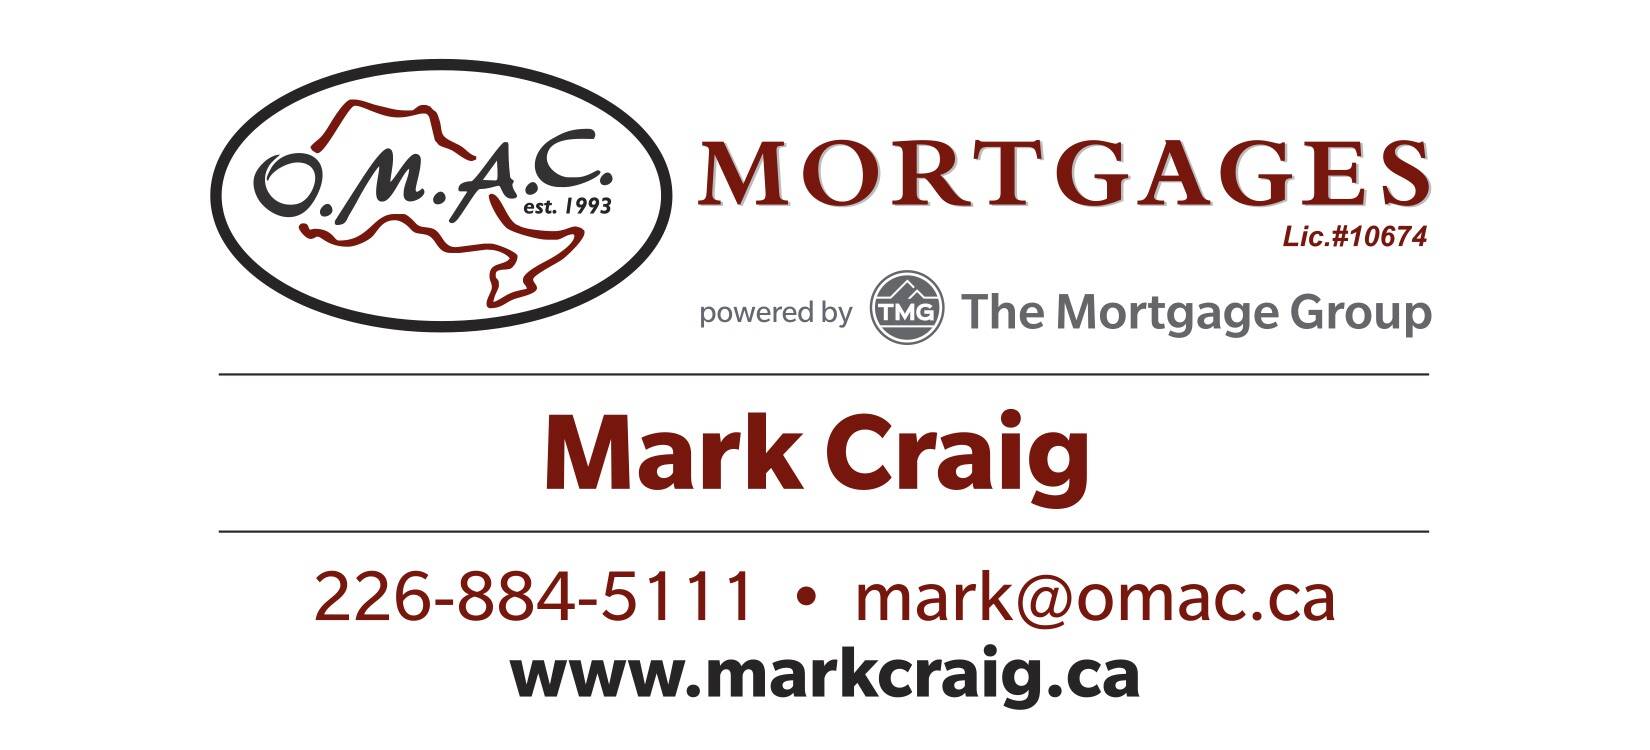 Mark Craig - OMAC Mortgages - BRONZE